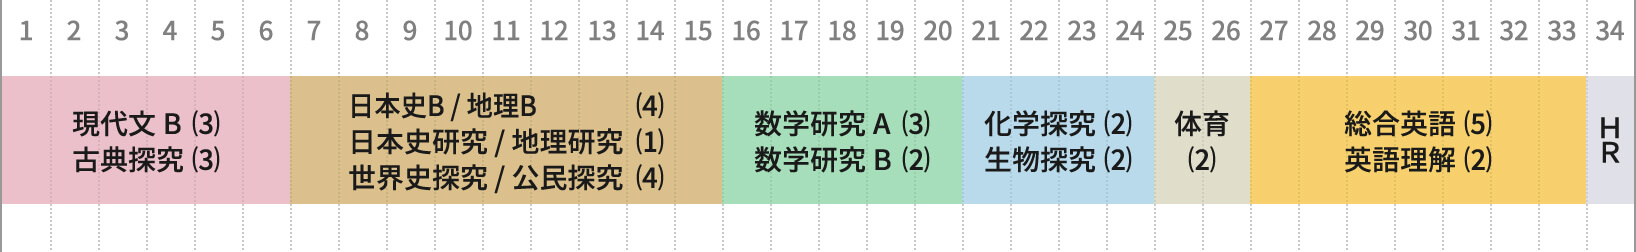 富山高校人文社会科学科3年の1週間の授業時間数